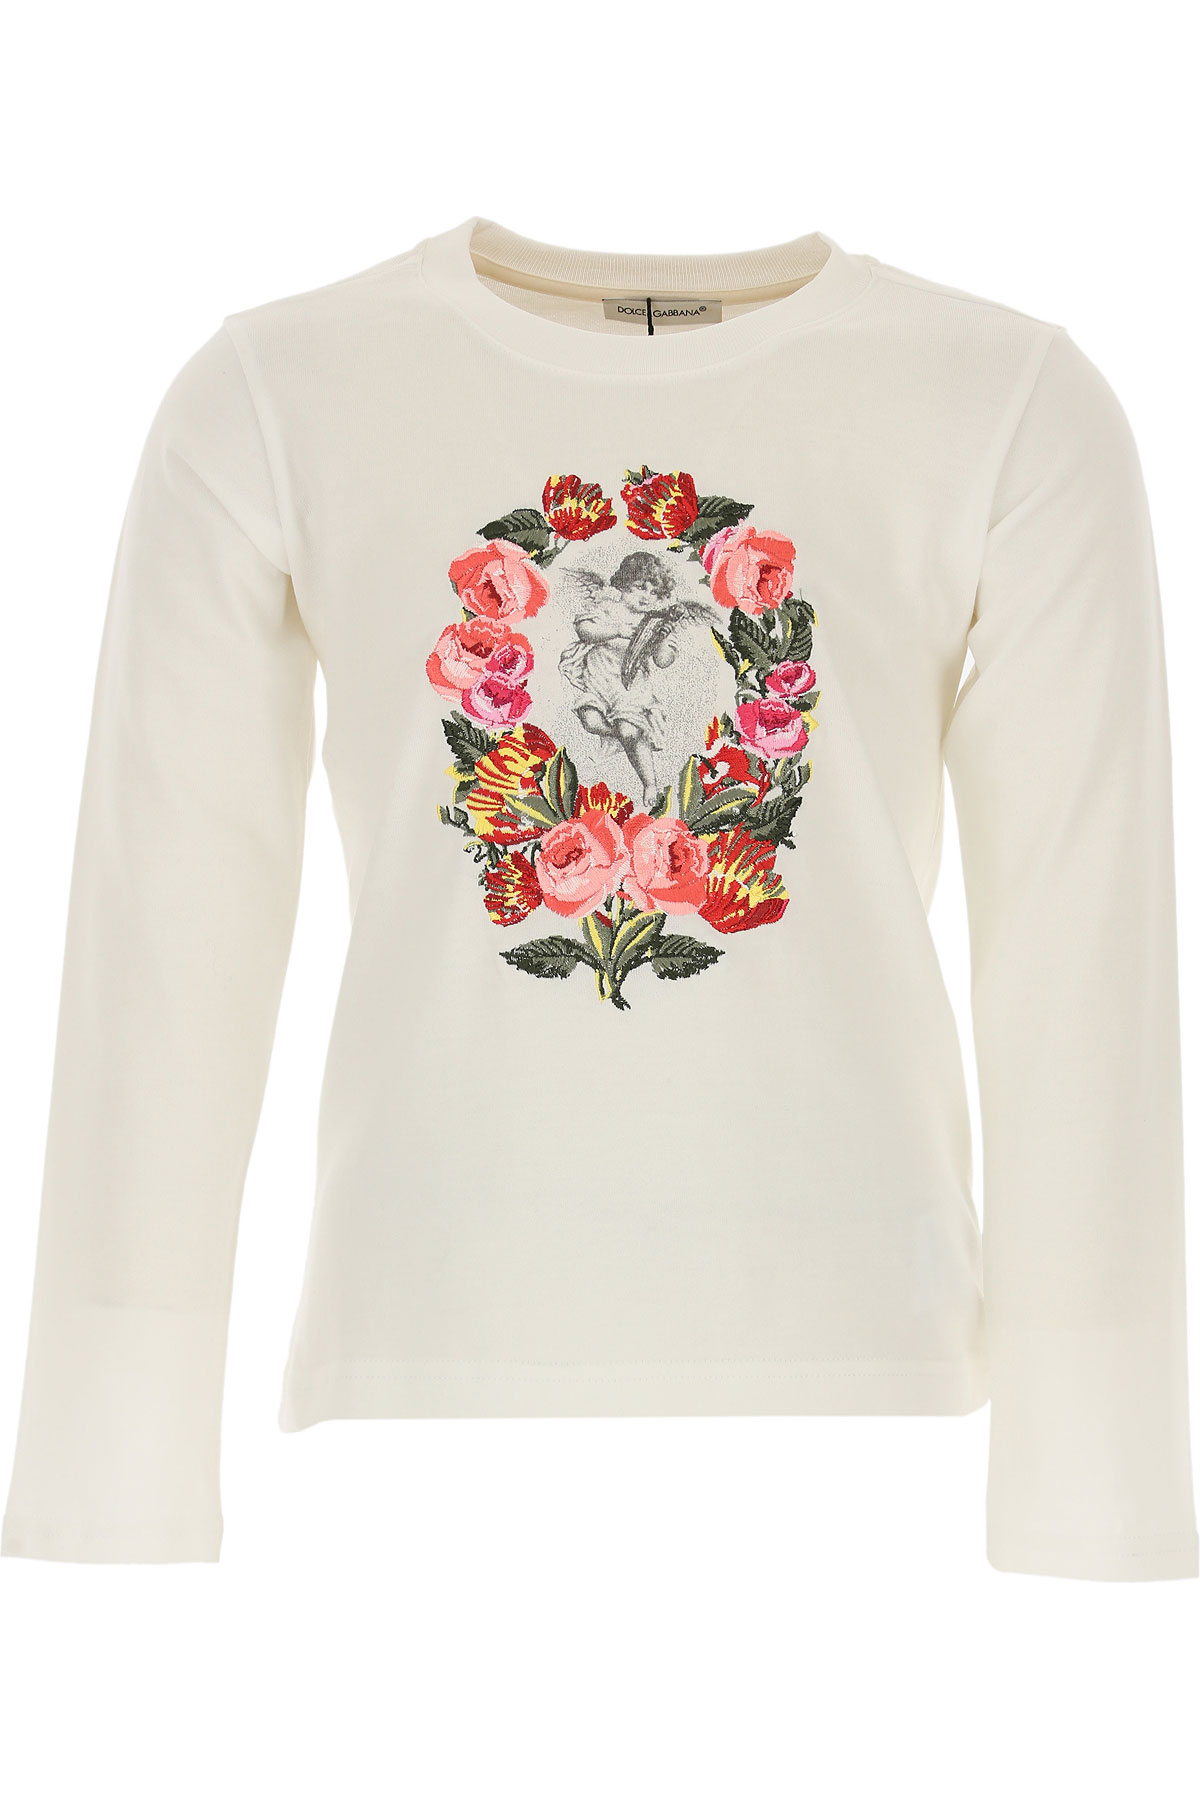 Dolce & Gabbana Kinder T-Shirt für Mädchen Günstig im Outlet Sale, Weiss, Baumwolle, 2017, 4Y 5Y